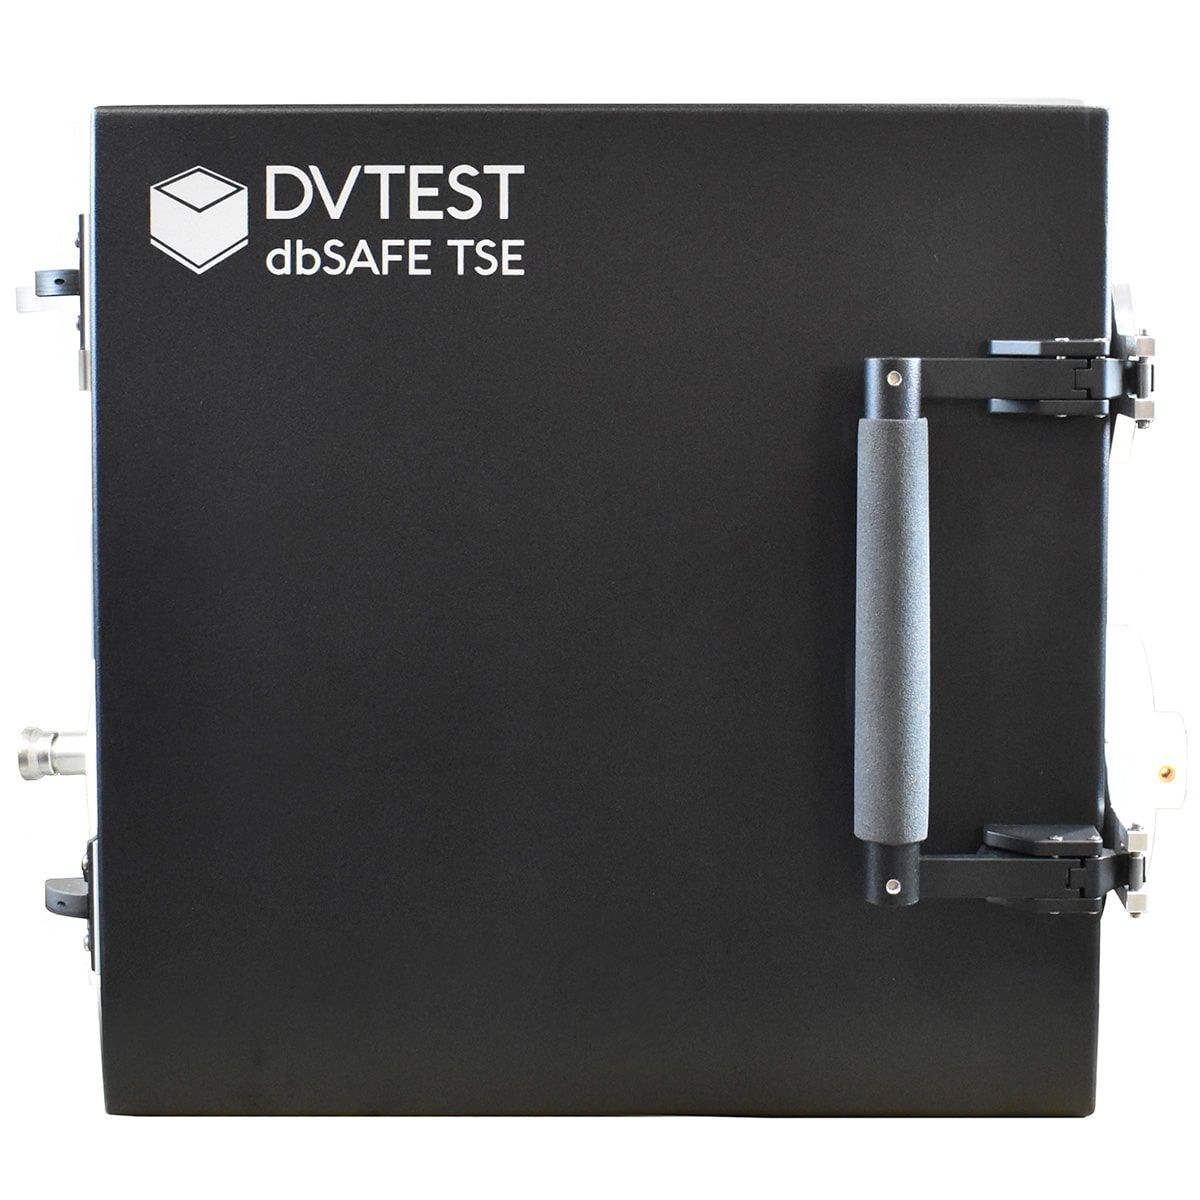 Термостойкая радиочастотная испытательная камера DVTEST dbSAFE TSE с изоляцией до 100 дБ в диапазоне от 700 МГц до 6 ГГц